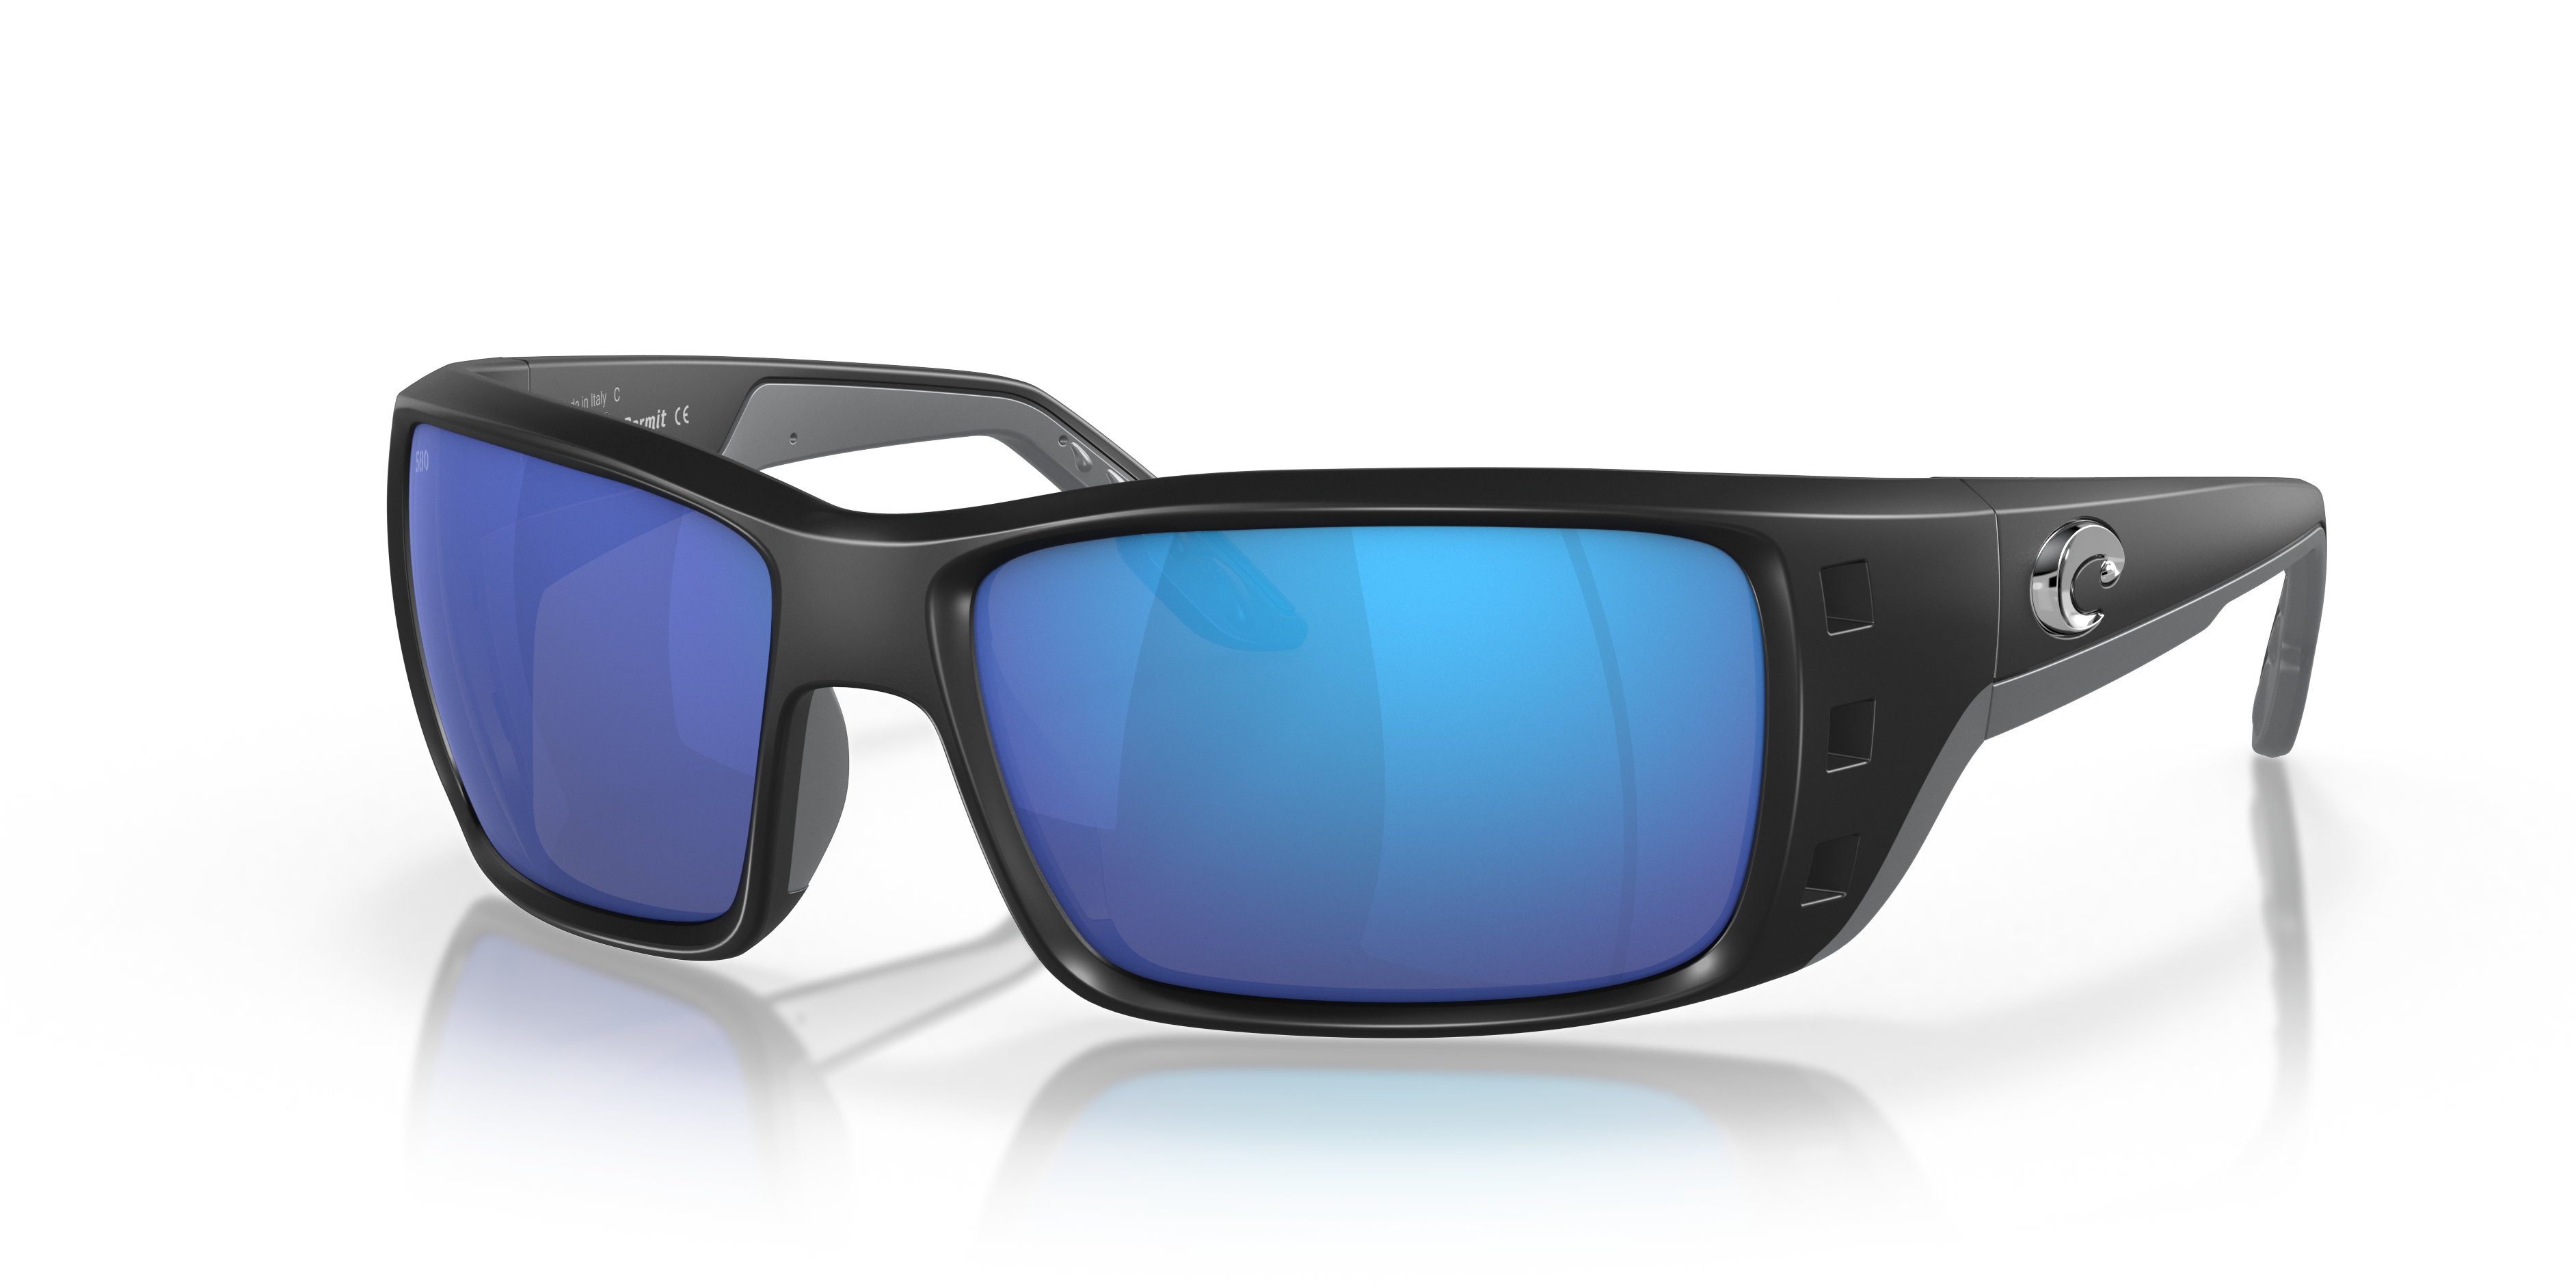 Permit Polarized Sunglasses in Blue Mirror | Costa Del Mar®